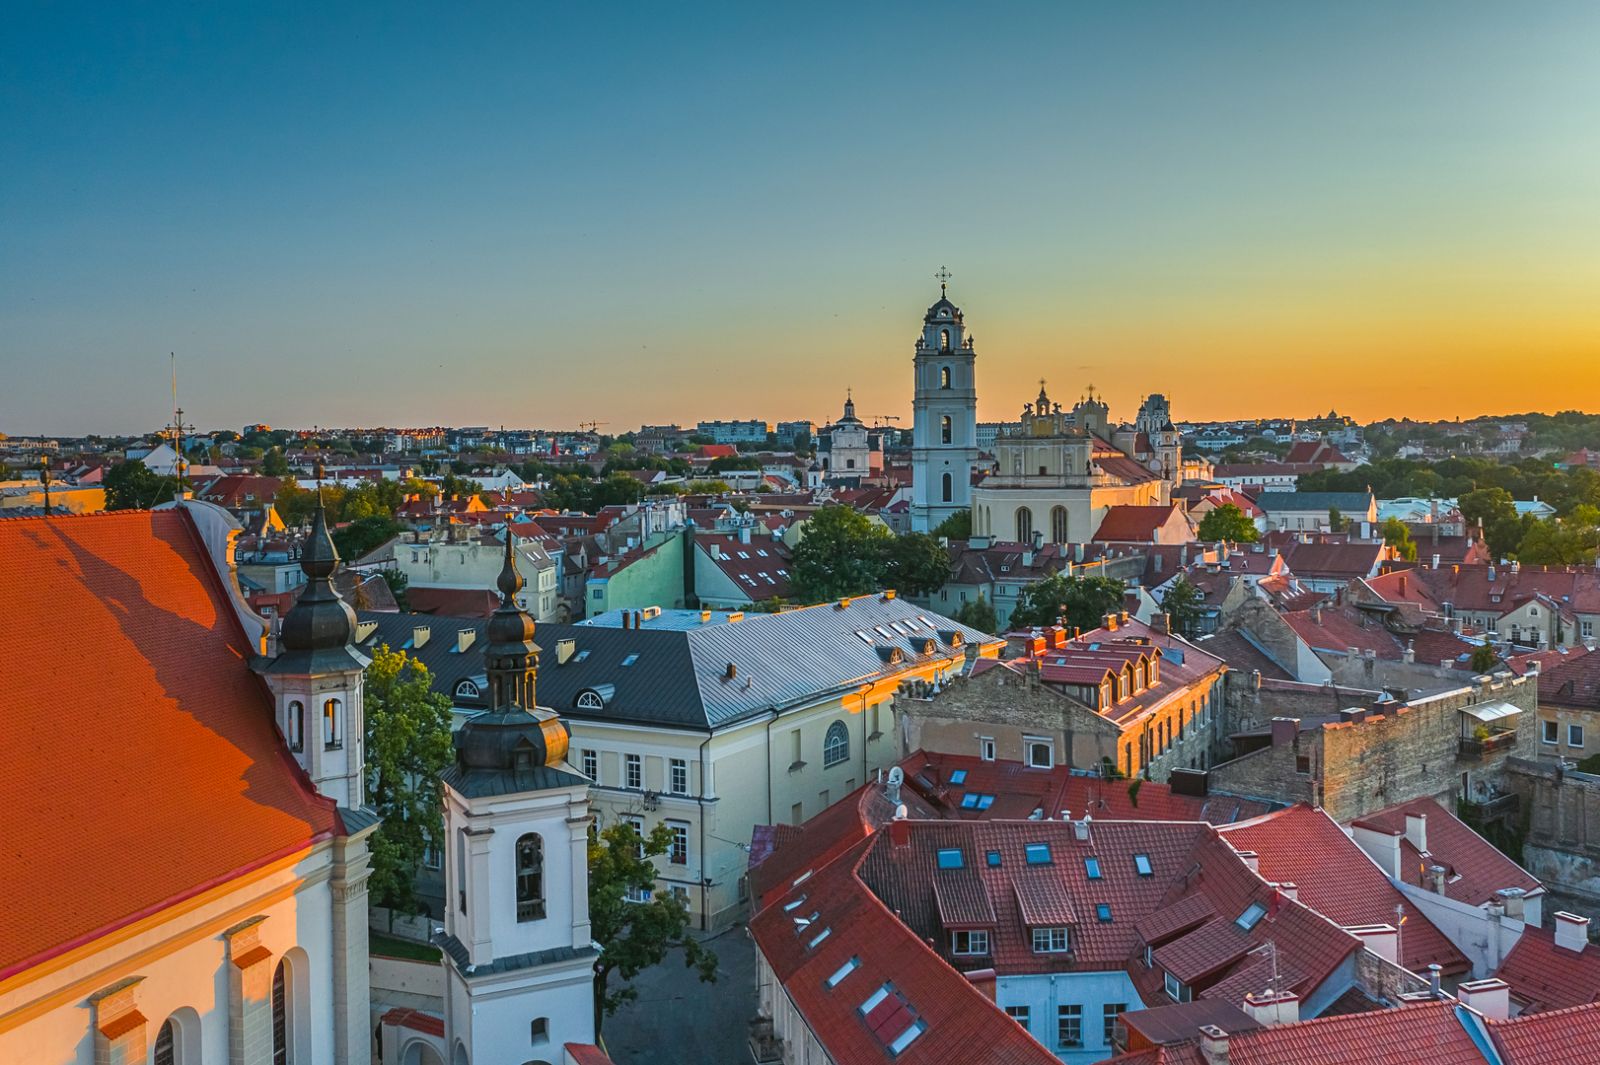 Litva đang cạnh tranh để trở thành một trong những trung tâm công nghệ lớn của châu Âu 